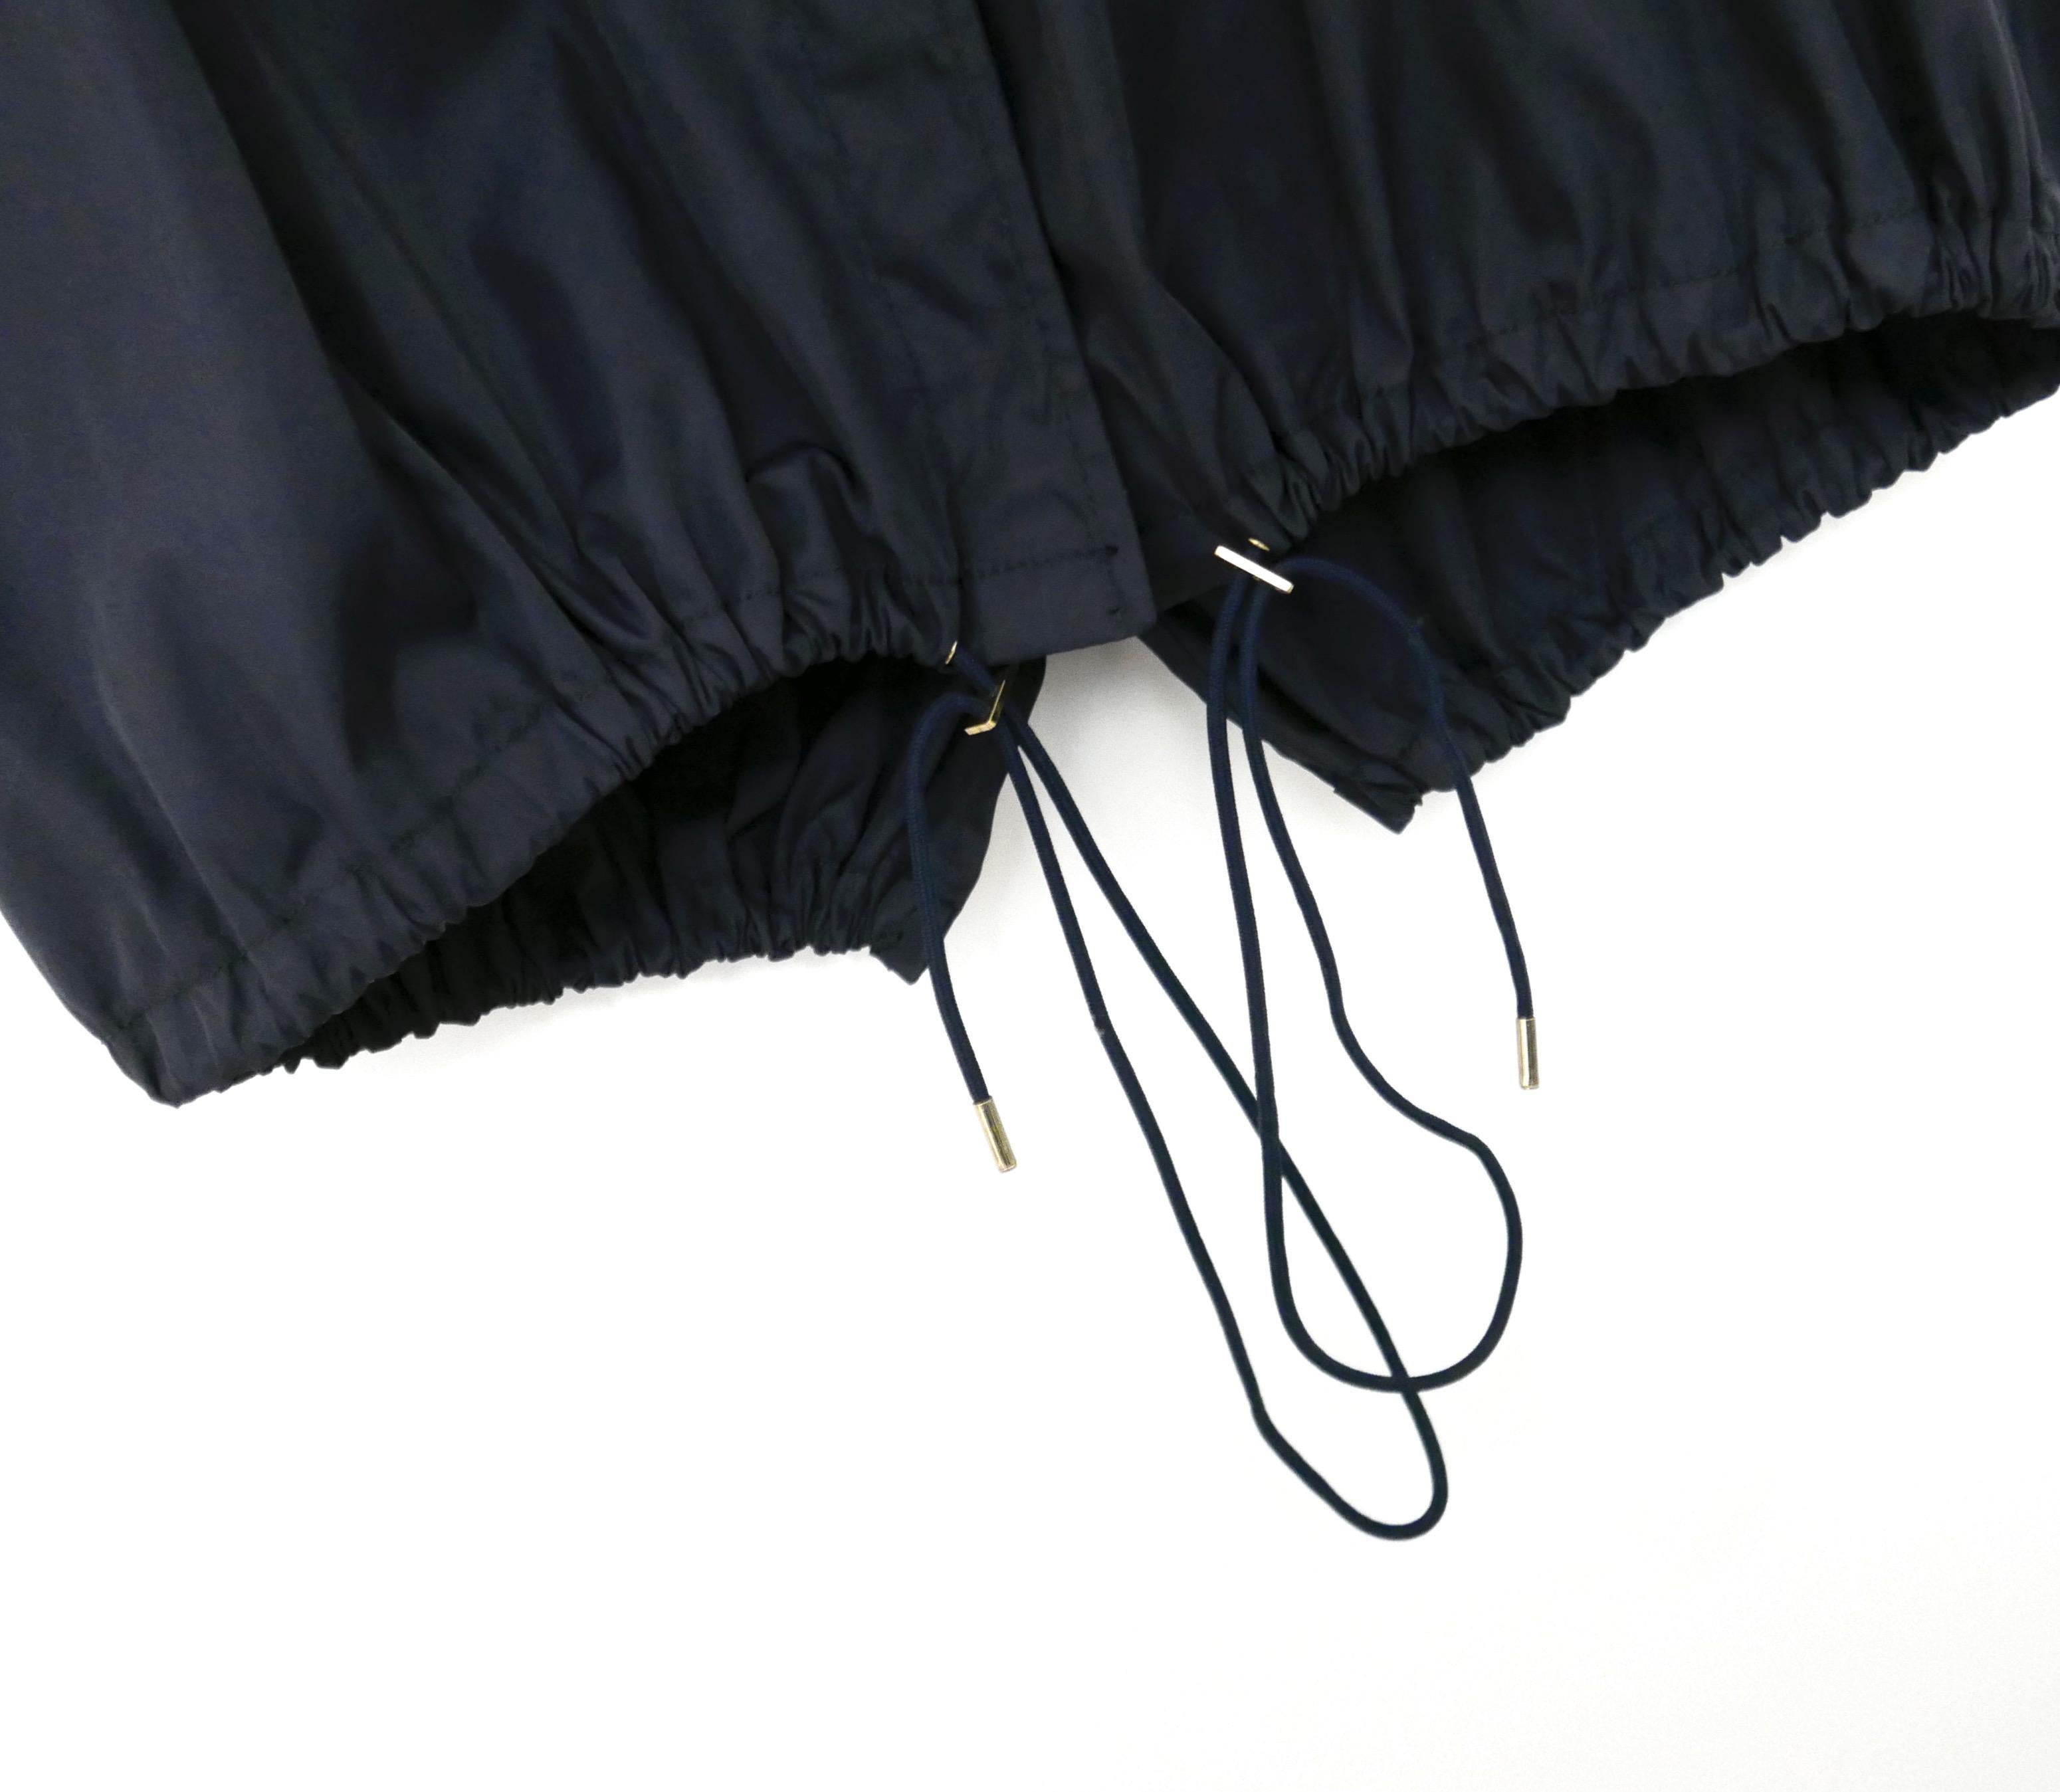 Super cool trench mac meets anorak coat from Givenchy Resort 2012 - acheté pour £1500 et porté une fois.

La couche supérieure est inspirée du trench-coat en coton vert armée et la couche inférieure de l'anorak en polyamide bleu marine. Coupe très